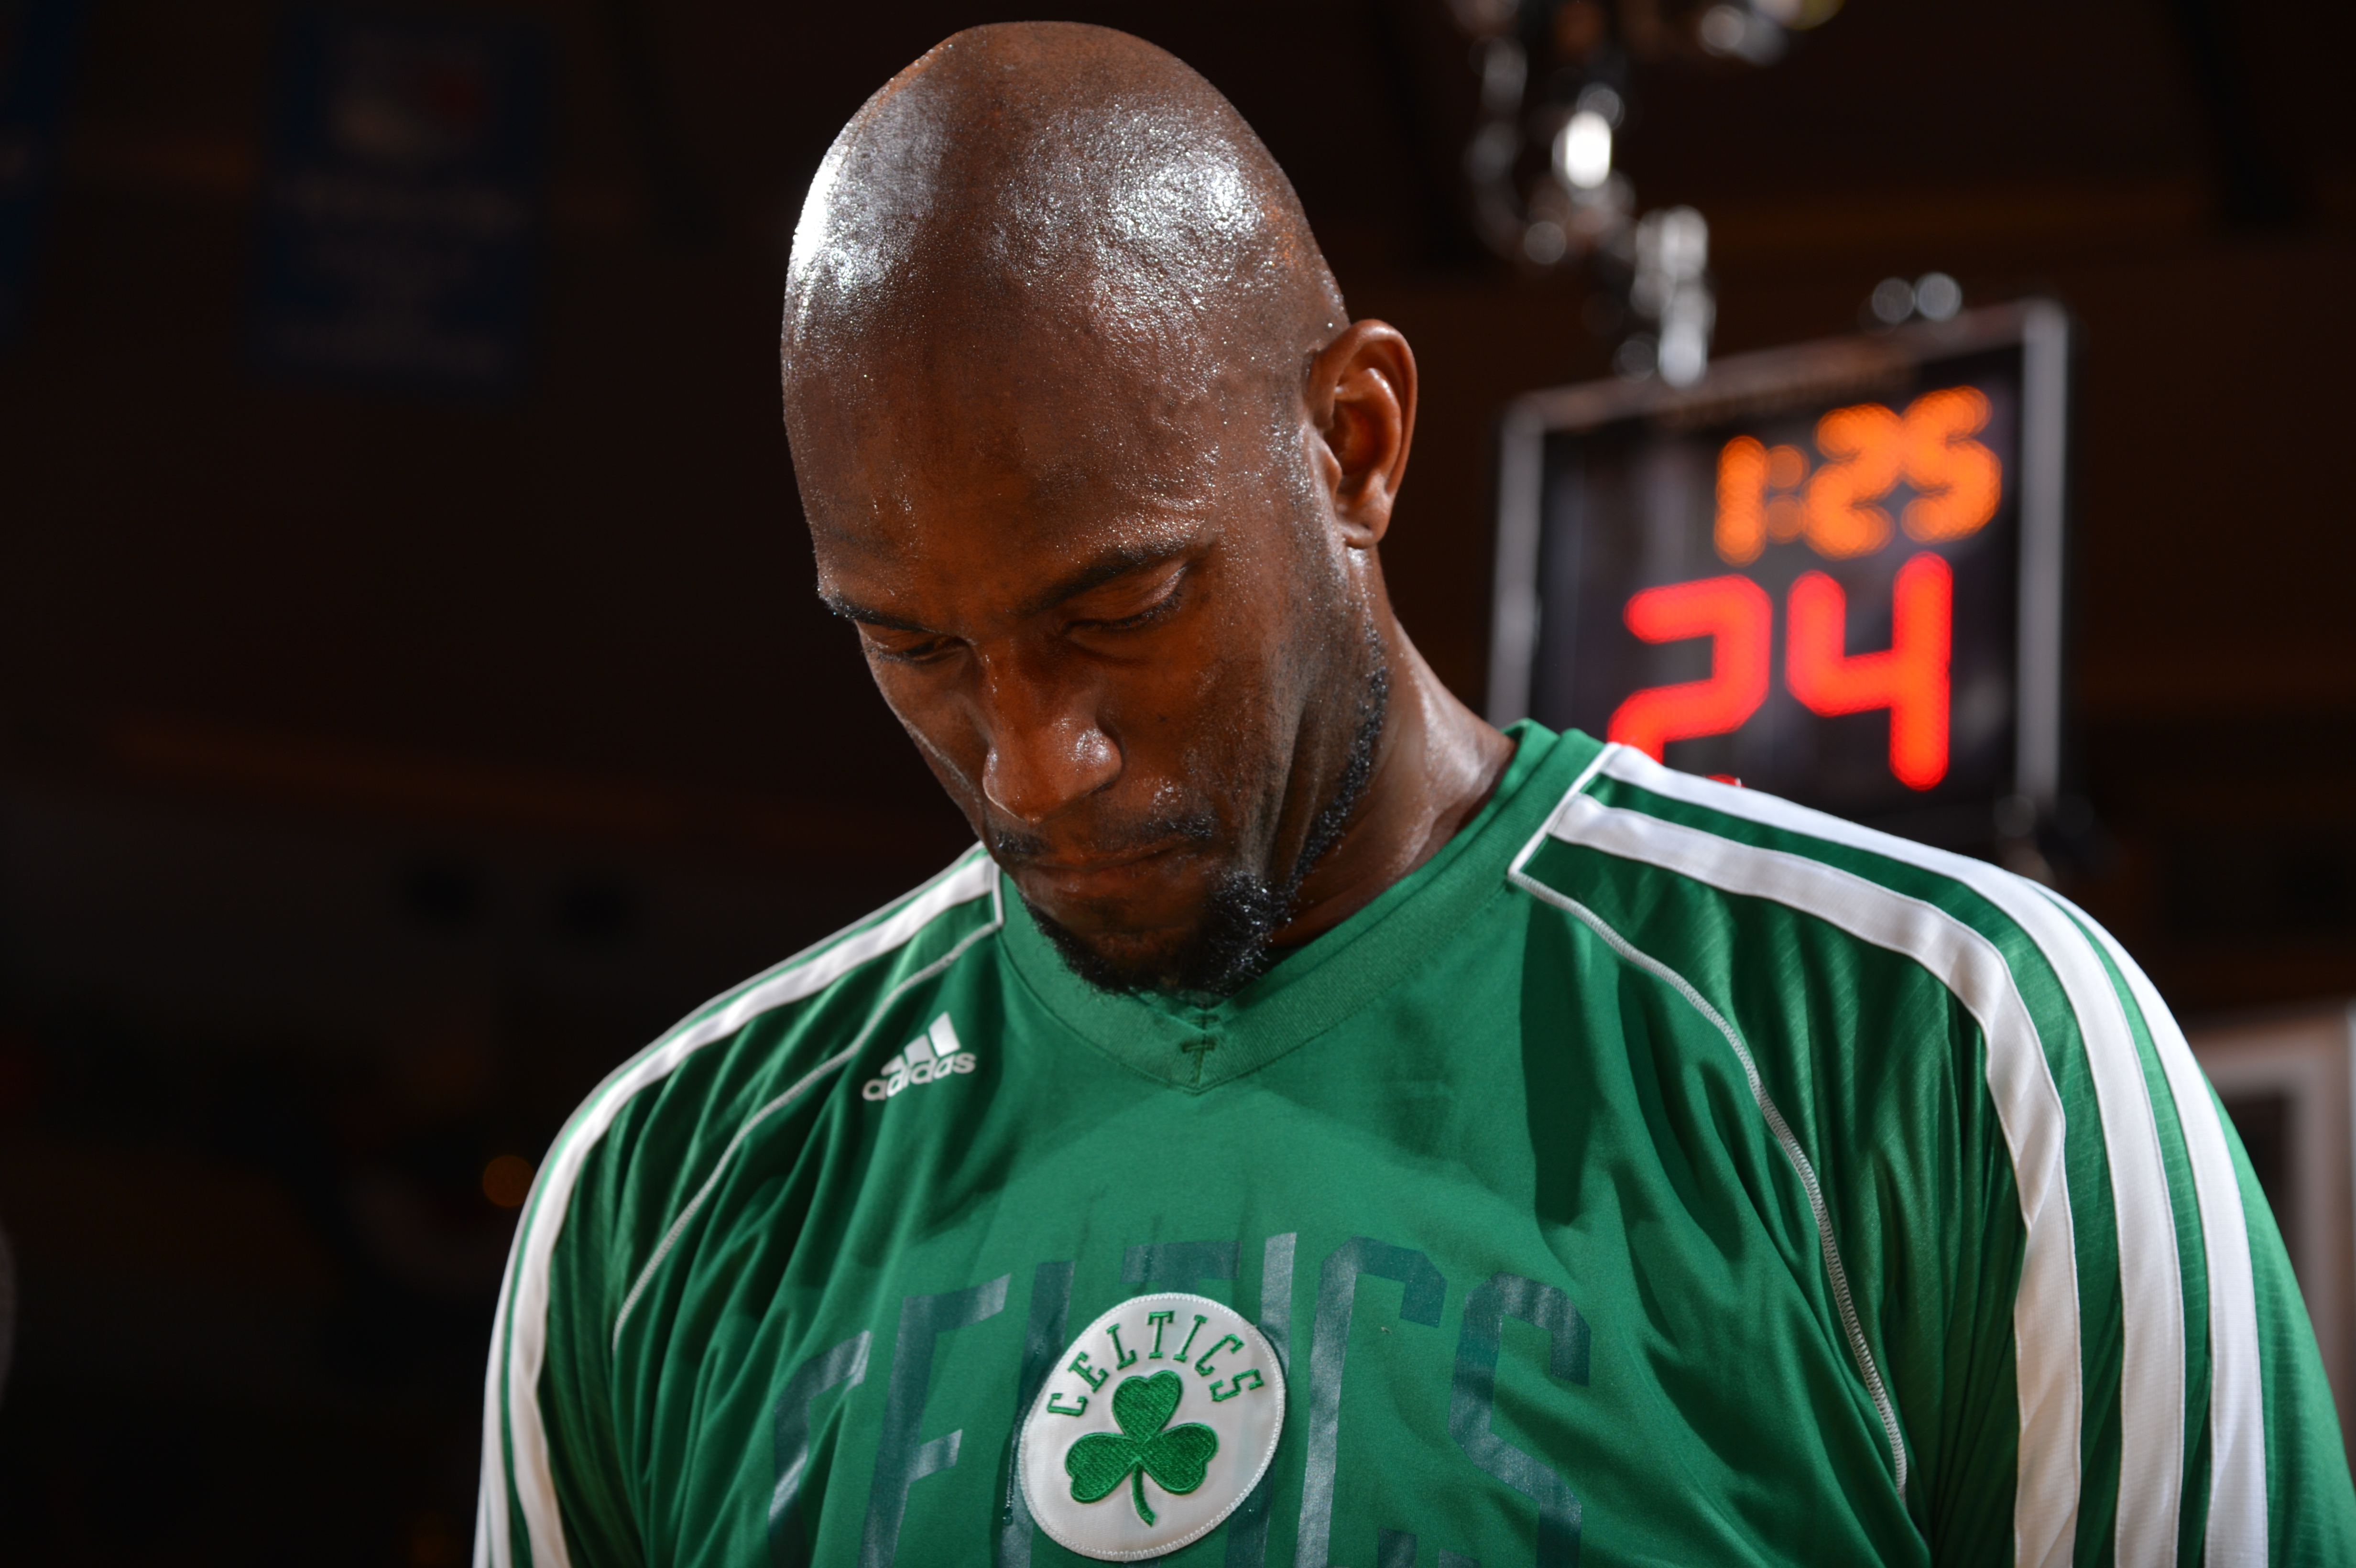 Boston Celtics will retire jersey of Kevin Garnett